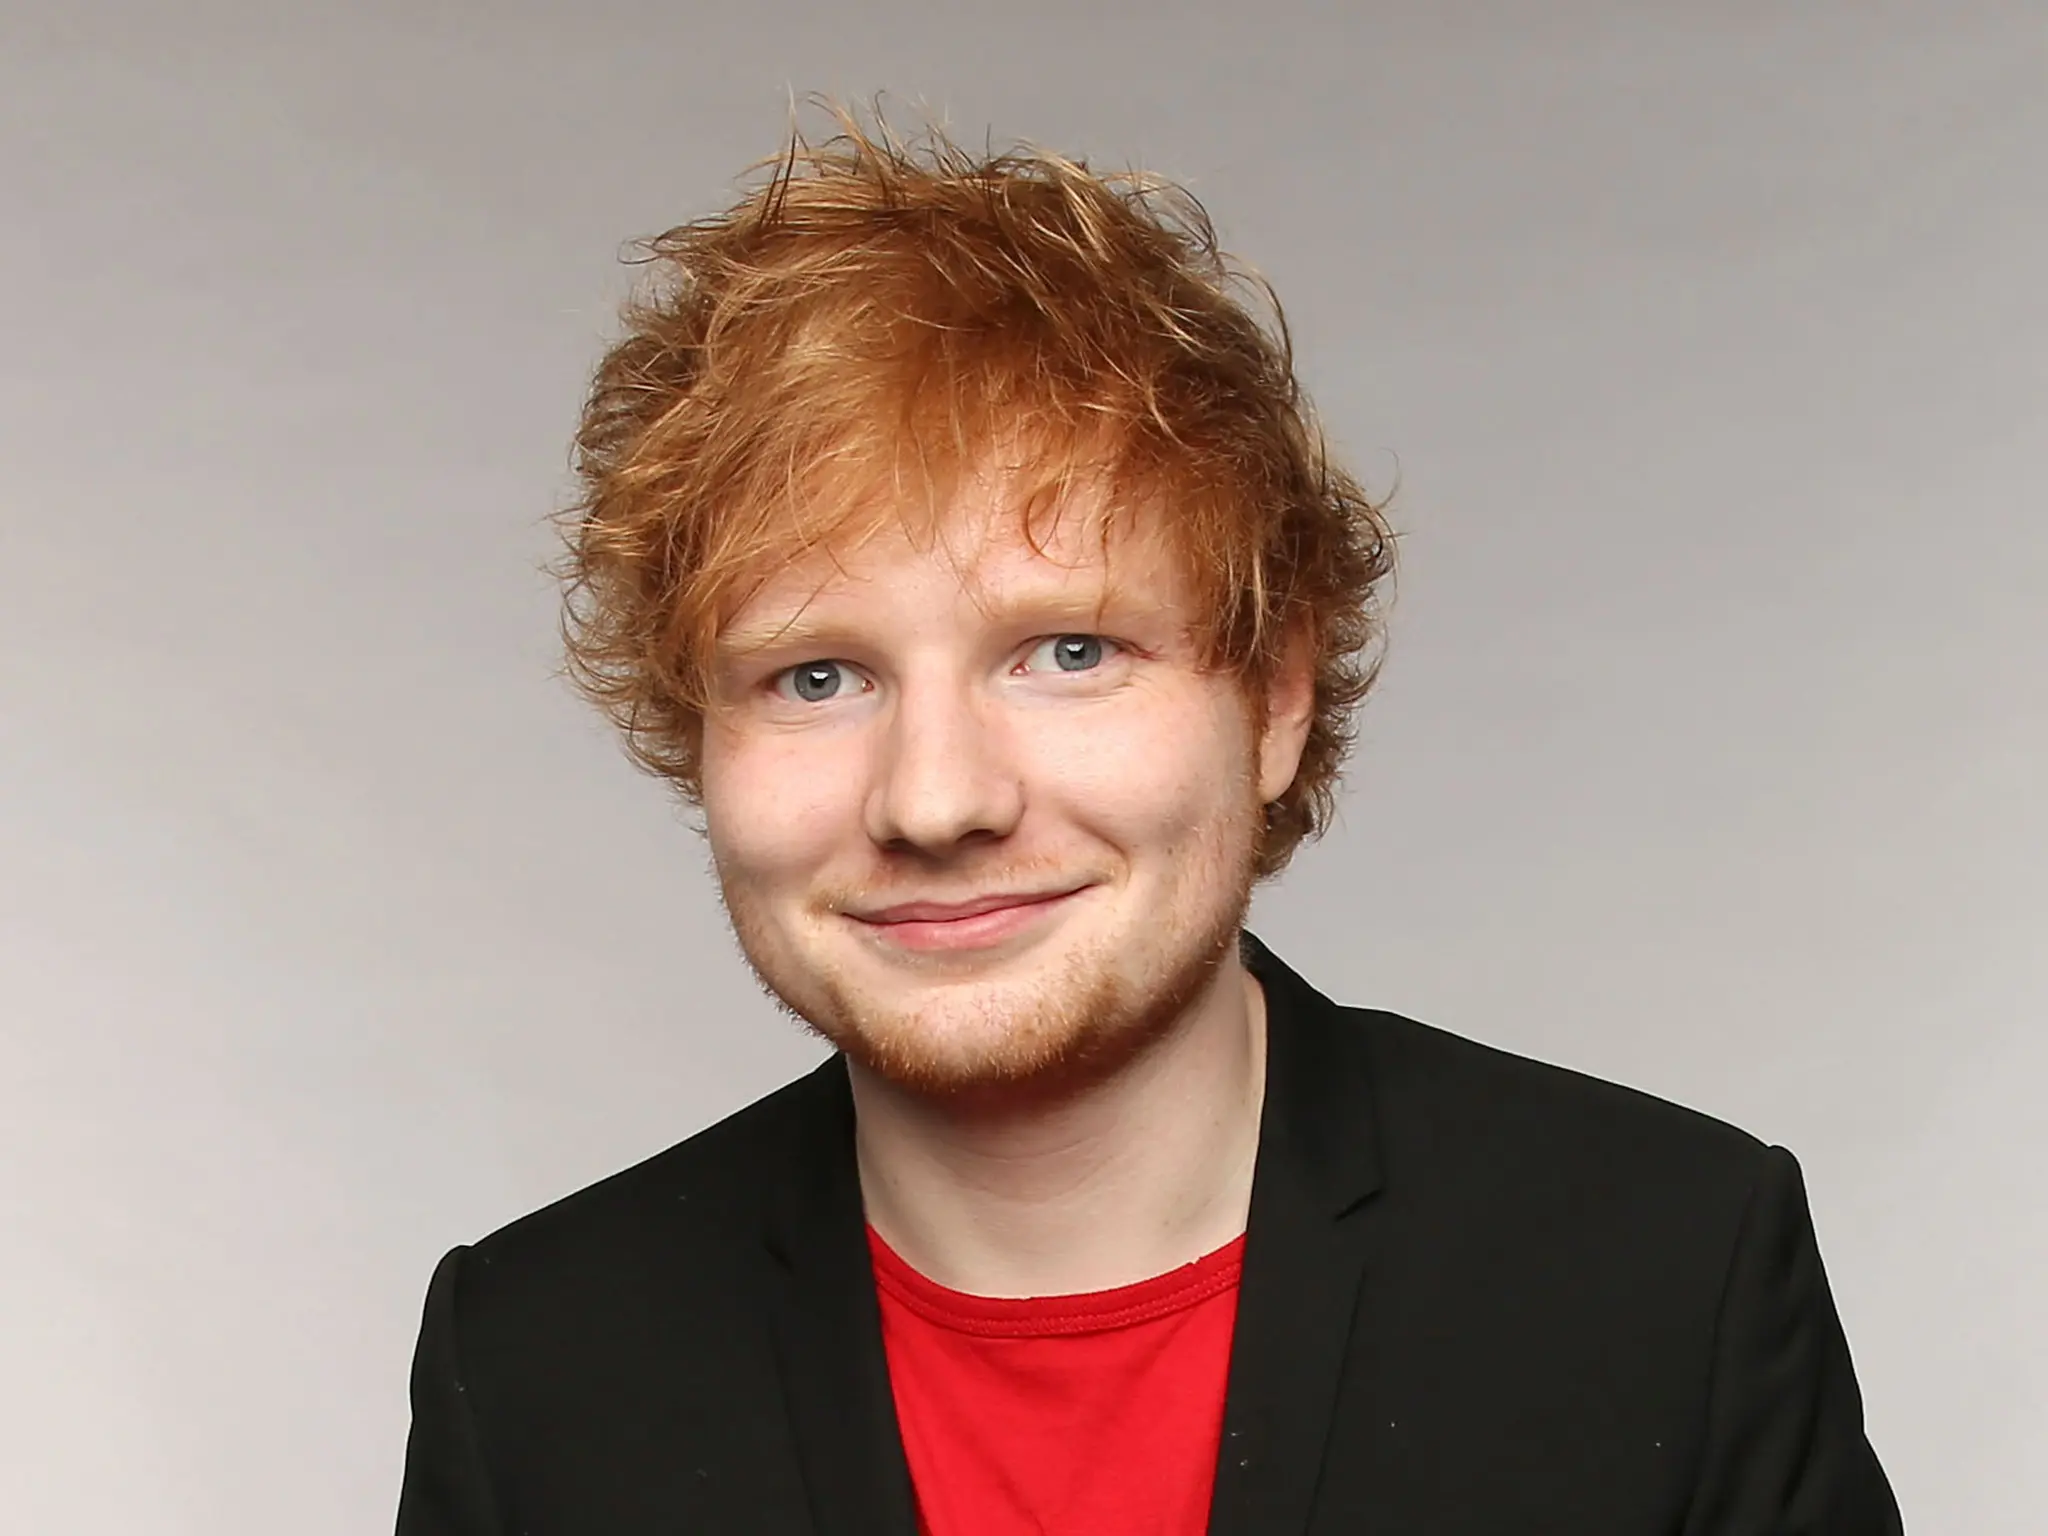 Ed Sheeran ialah seorang penyanyi, penulis lagu, musisi, dan aktor